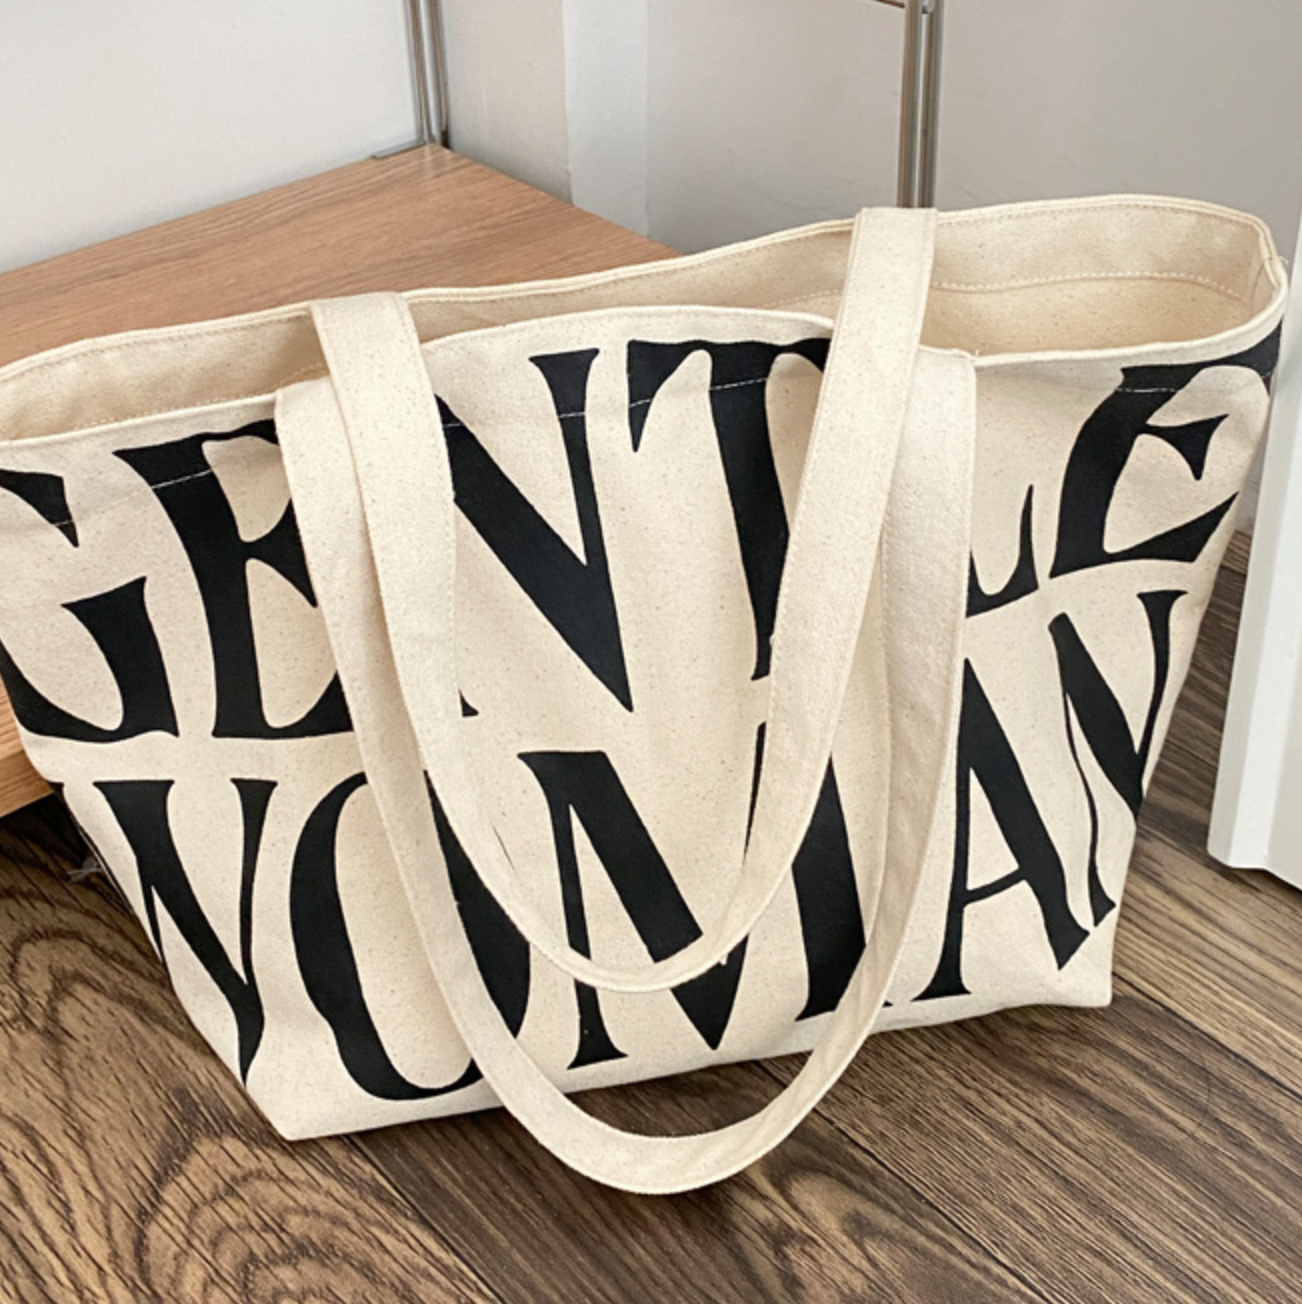 gentle woman tote bag